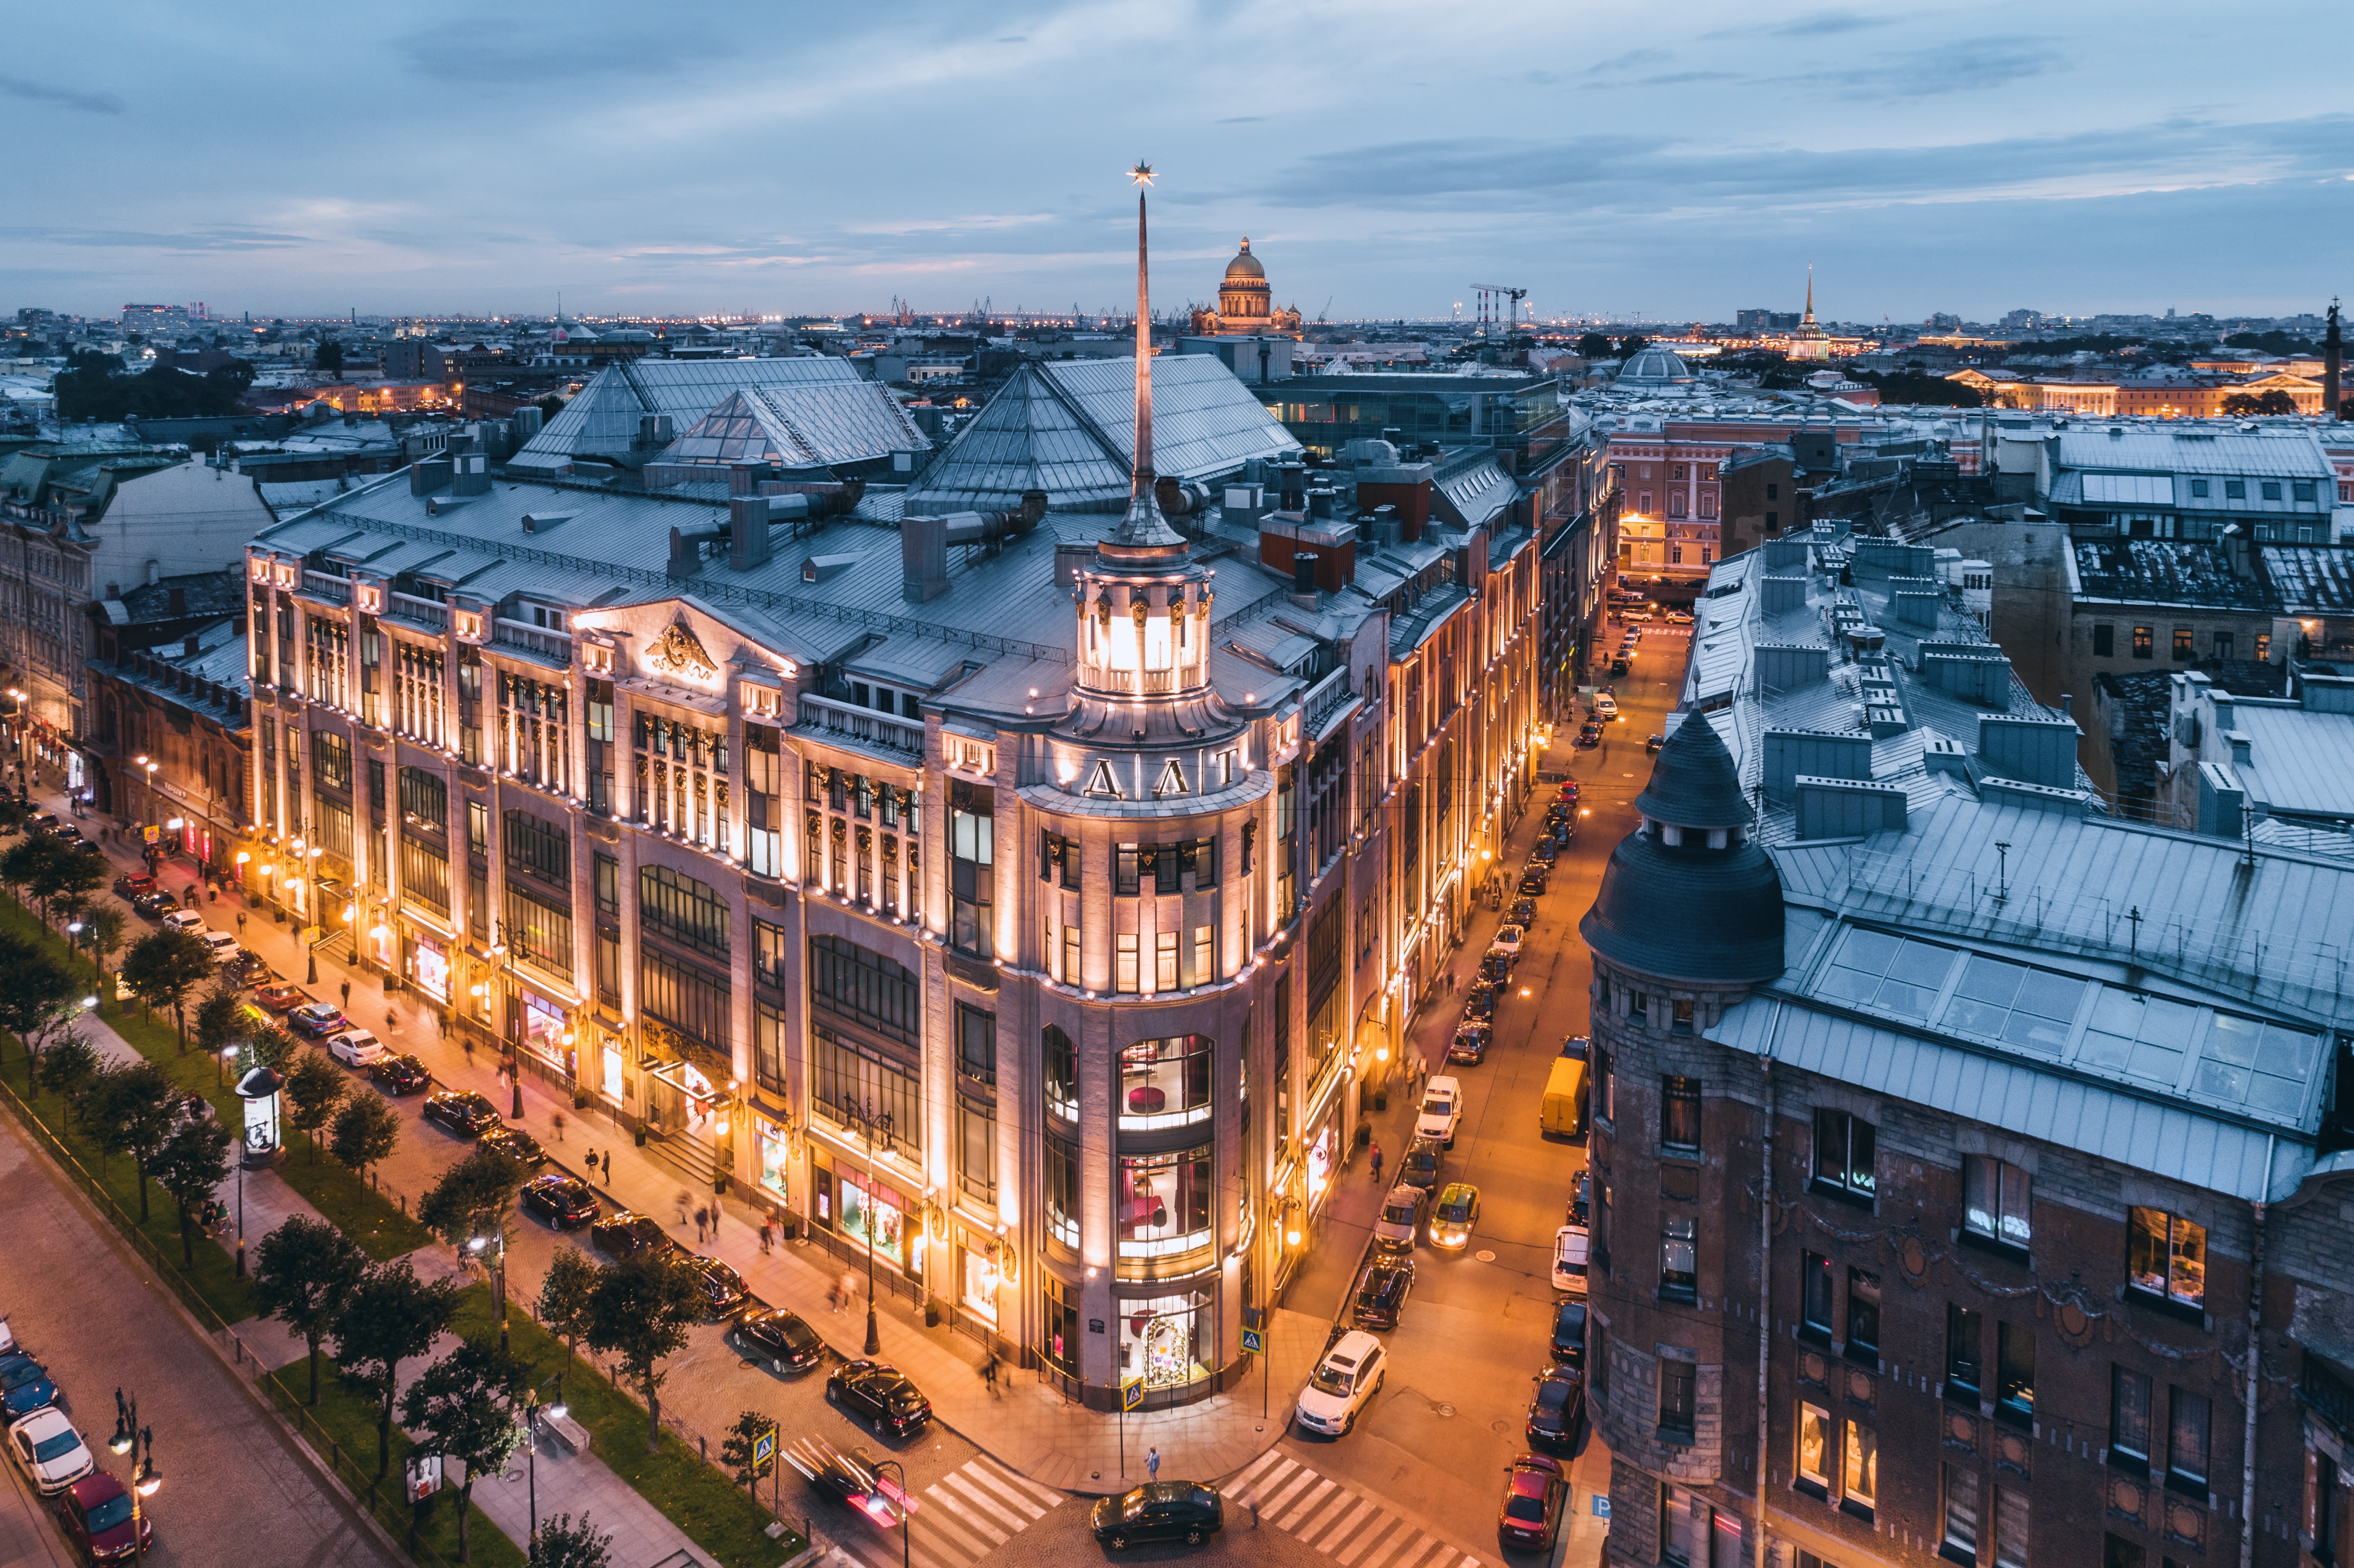 聖彼得堡 DLT 百貨 110 週年慶祝活動現場回顧